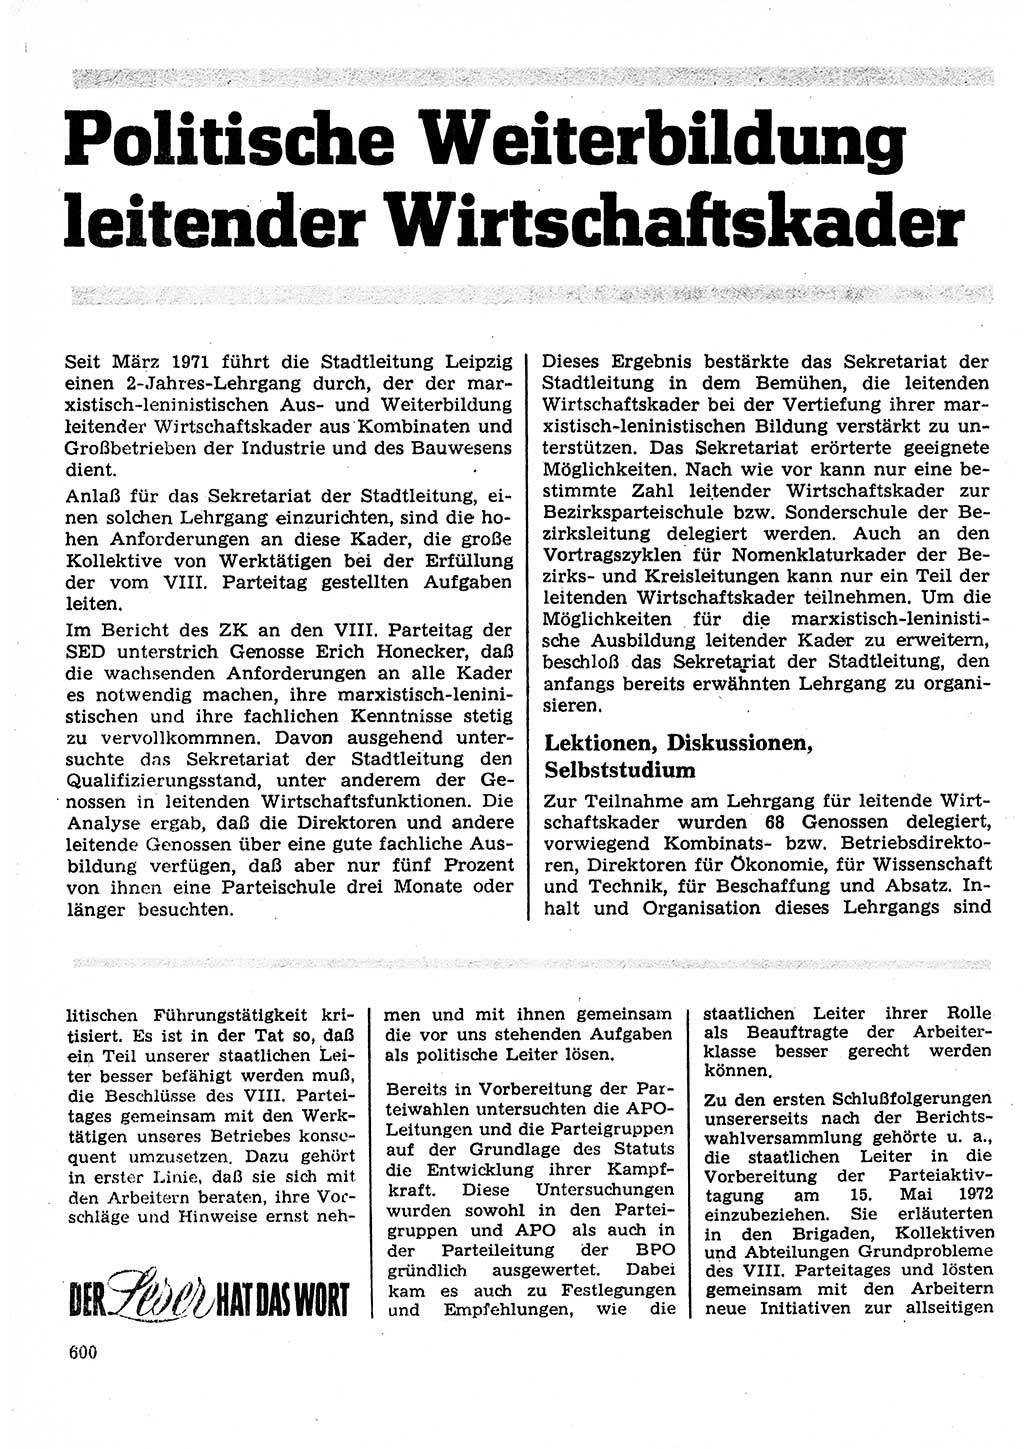 Neuer Weg (NW), Organ des Zentralkomitees (ZK) der SED (Sozialistische Einheitspartei Deutschlands) für Fragen des Parteilebens, 27. Jahrgang [Deutsche Demokratische Republik (DDR)] 1972, Seite 600 (NW ZK SED DDR 1972, S. 600)